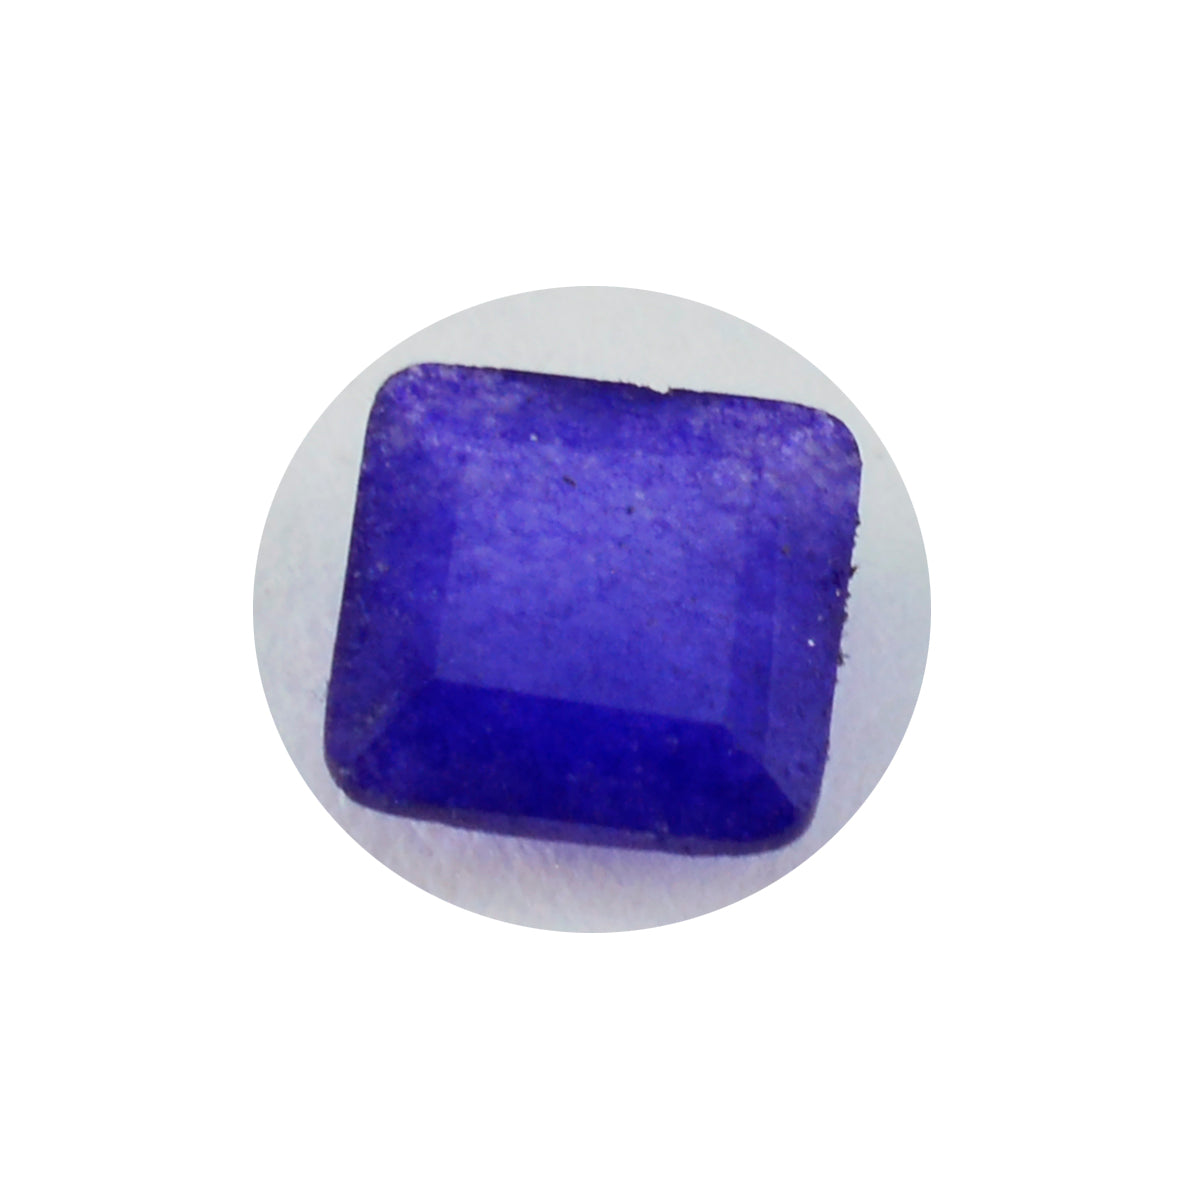 riyogems 1 шт. натуральная синяя яшма граненая 9x9 мм квадратной формы красивый качественный драгоценный камень